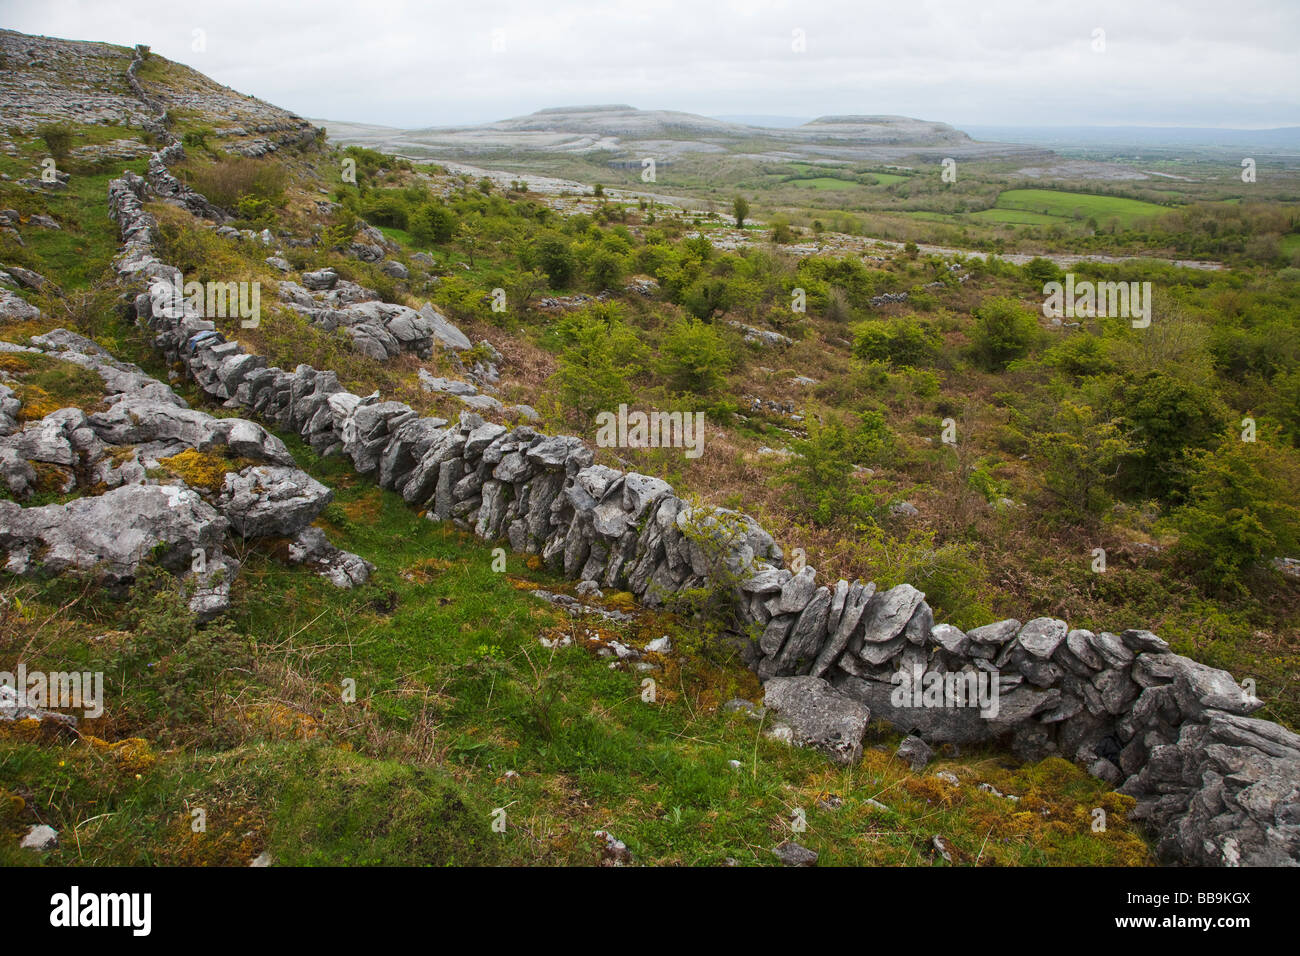 Pavages calcaires et des murs en pierre d'Fahee Turloughmore au nord à Burren Comté de Clare Irlande Irlande République d'Irlande Europ Banque D'Images